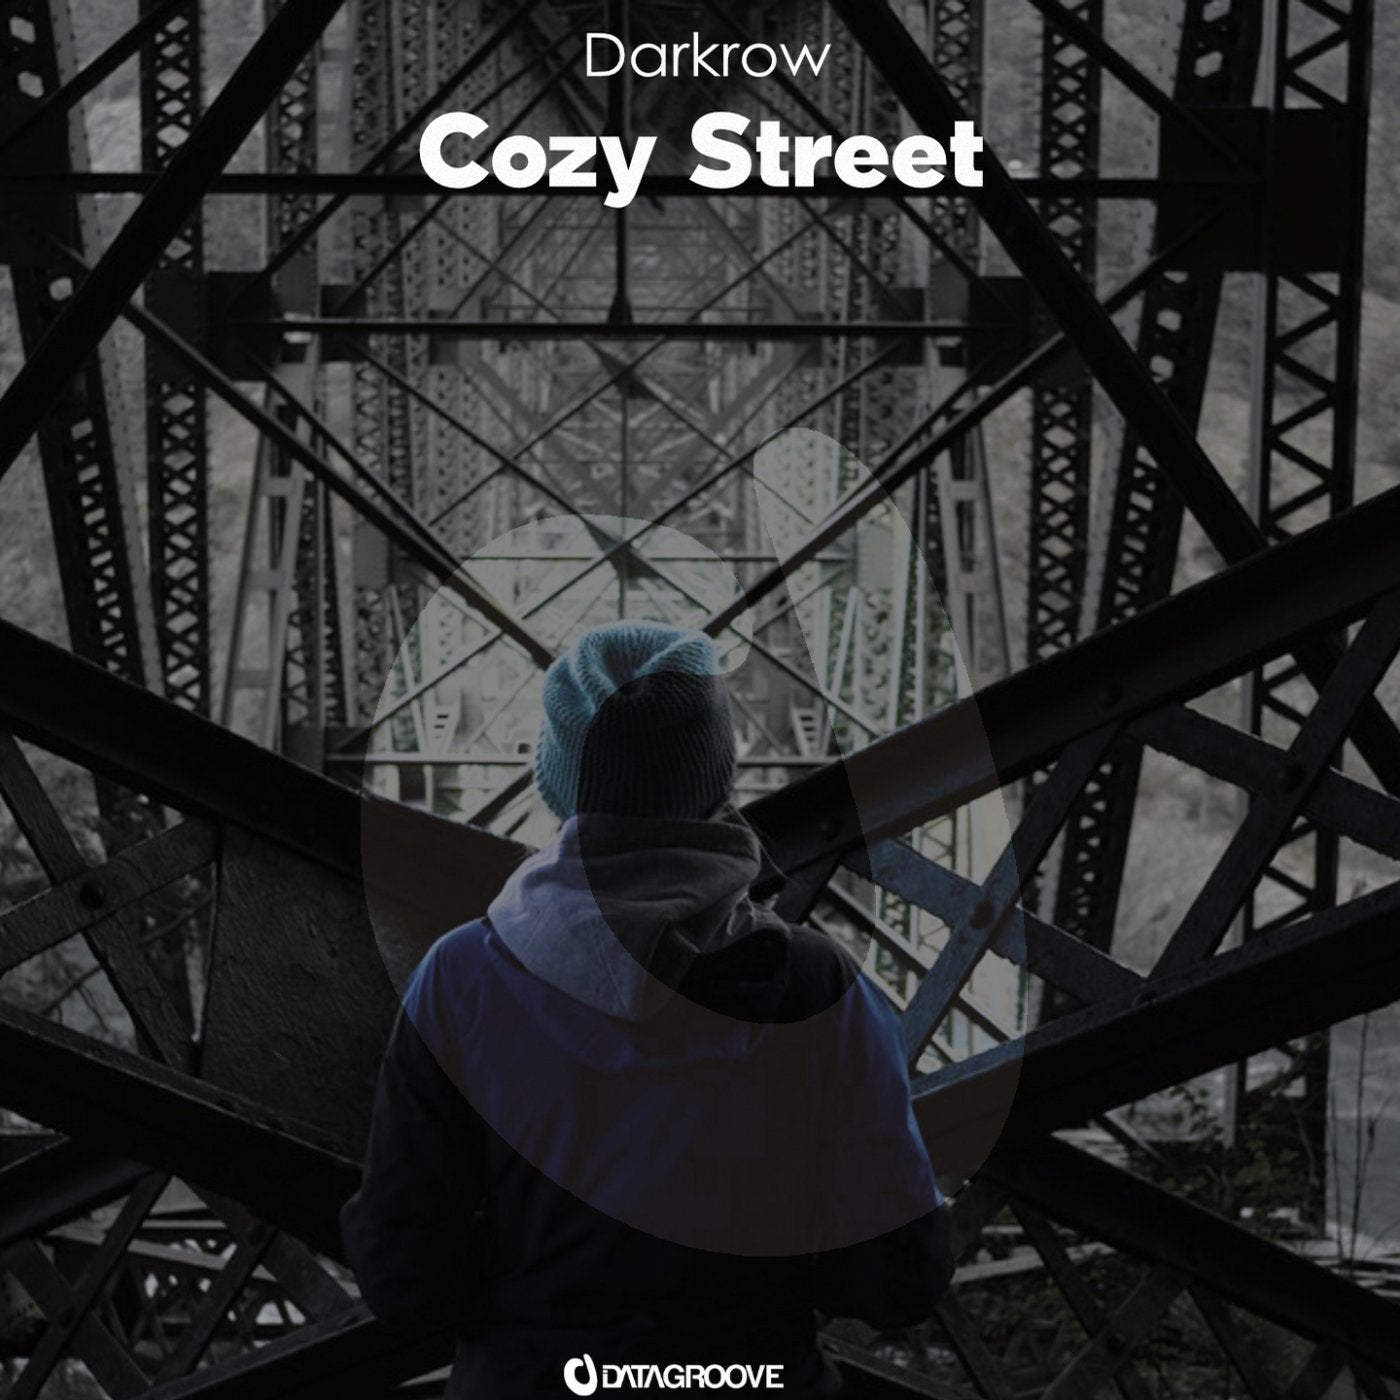 Cozy Street